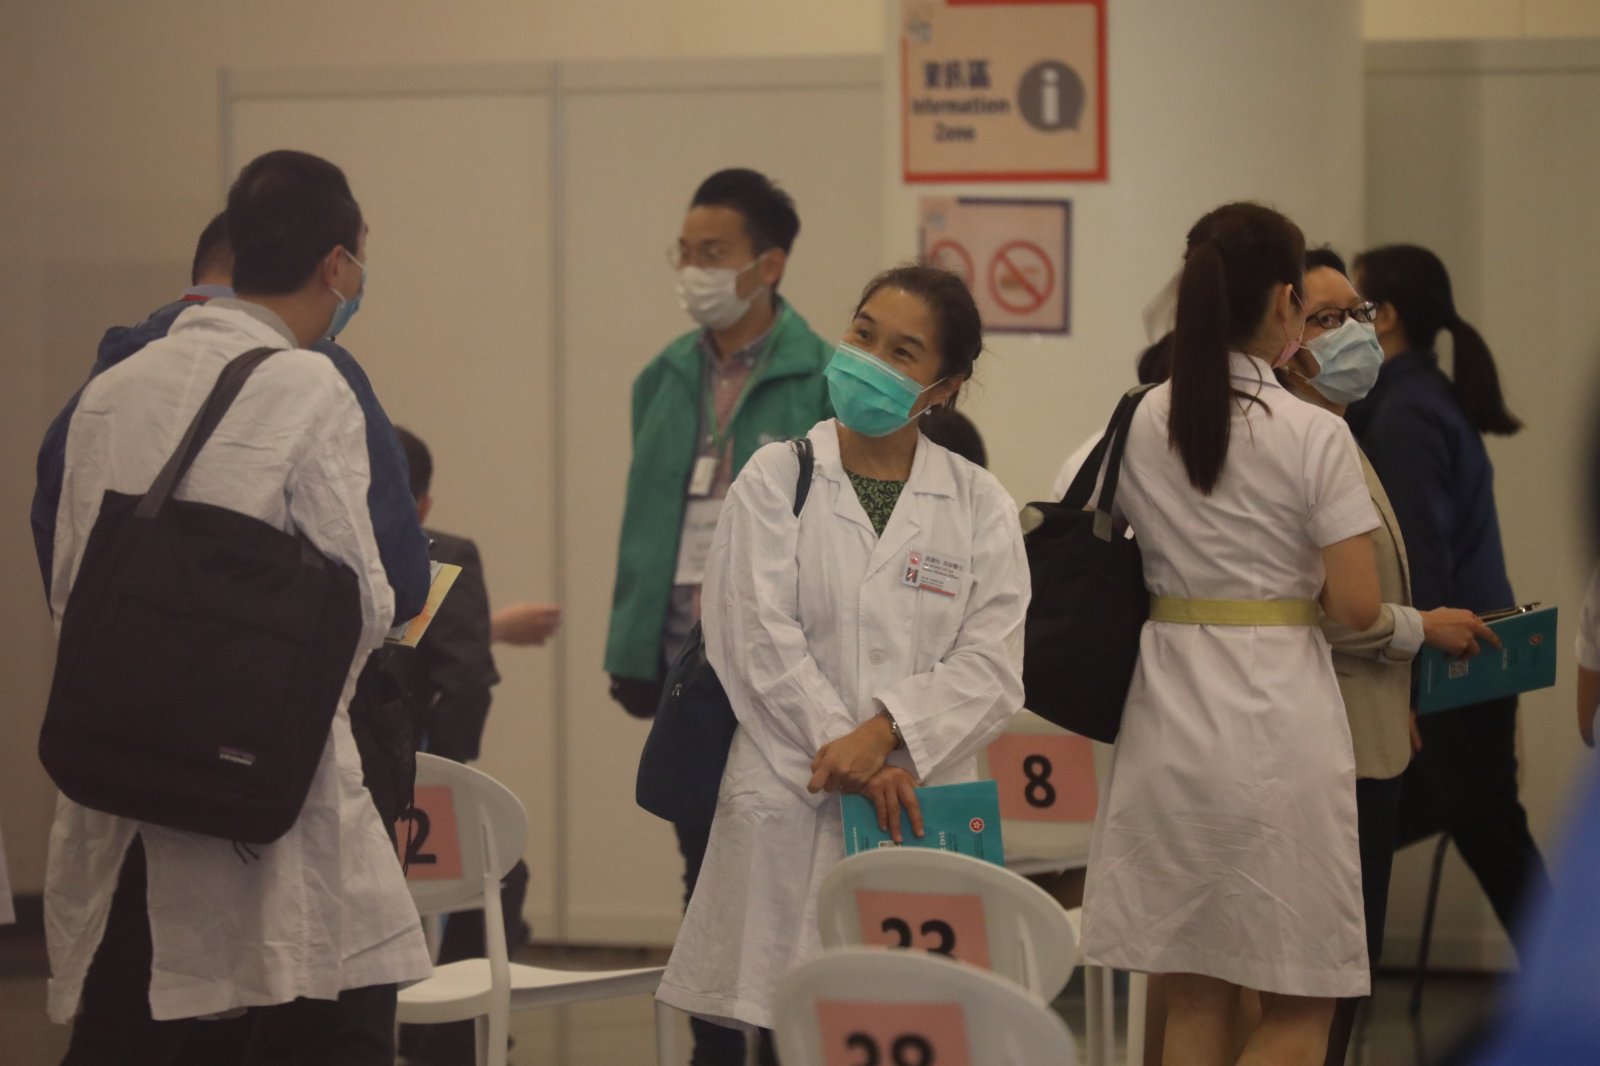 約二百名屬優先接種組別的人士今日（23日）上午十一時至下午一時及下午三時至五時，將率先在設於香港中央圖書館展覽館的社區疫苗接種中心接種新冠疫苗，以呼籲其他優先接種組別人士及早接種疫苗。

這些人士包括醫護人員、安老院舍員工、維持必要公共服務人員、跨境運輸工作人員等。（大公文匯全媒體記者攝）